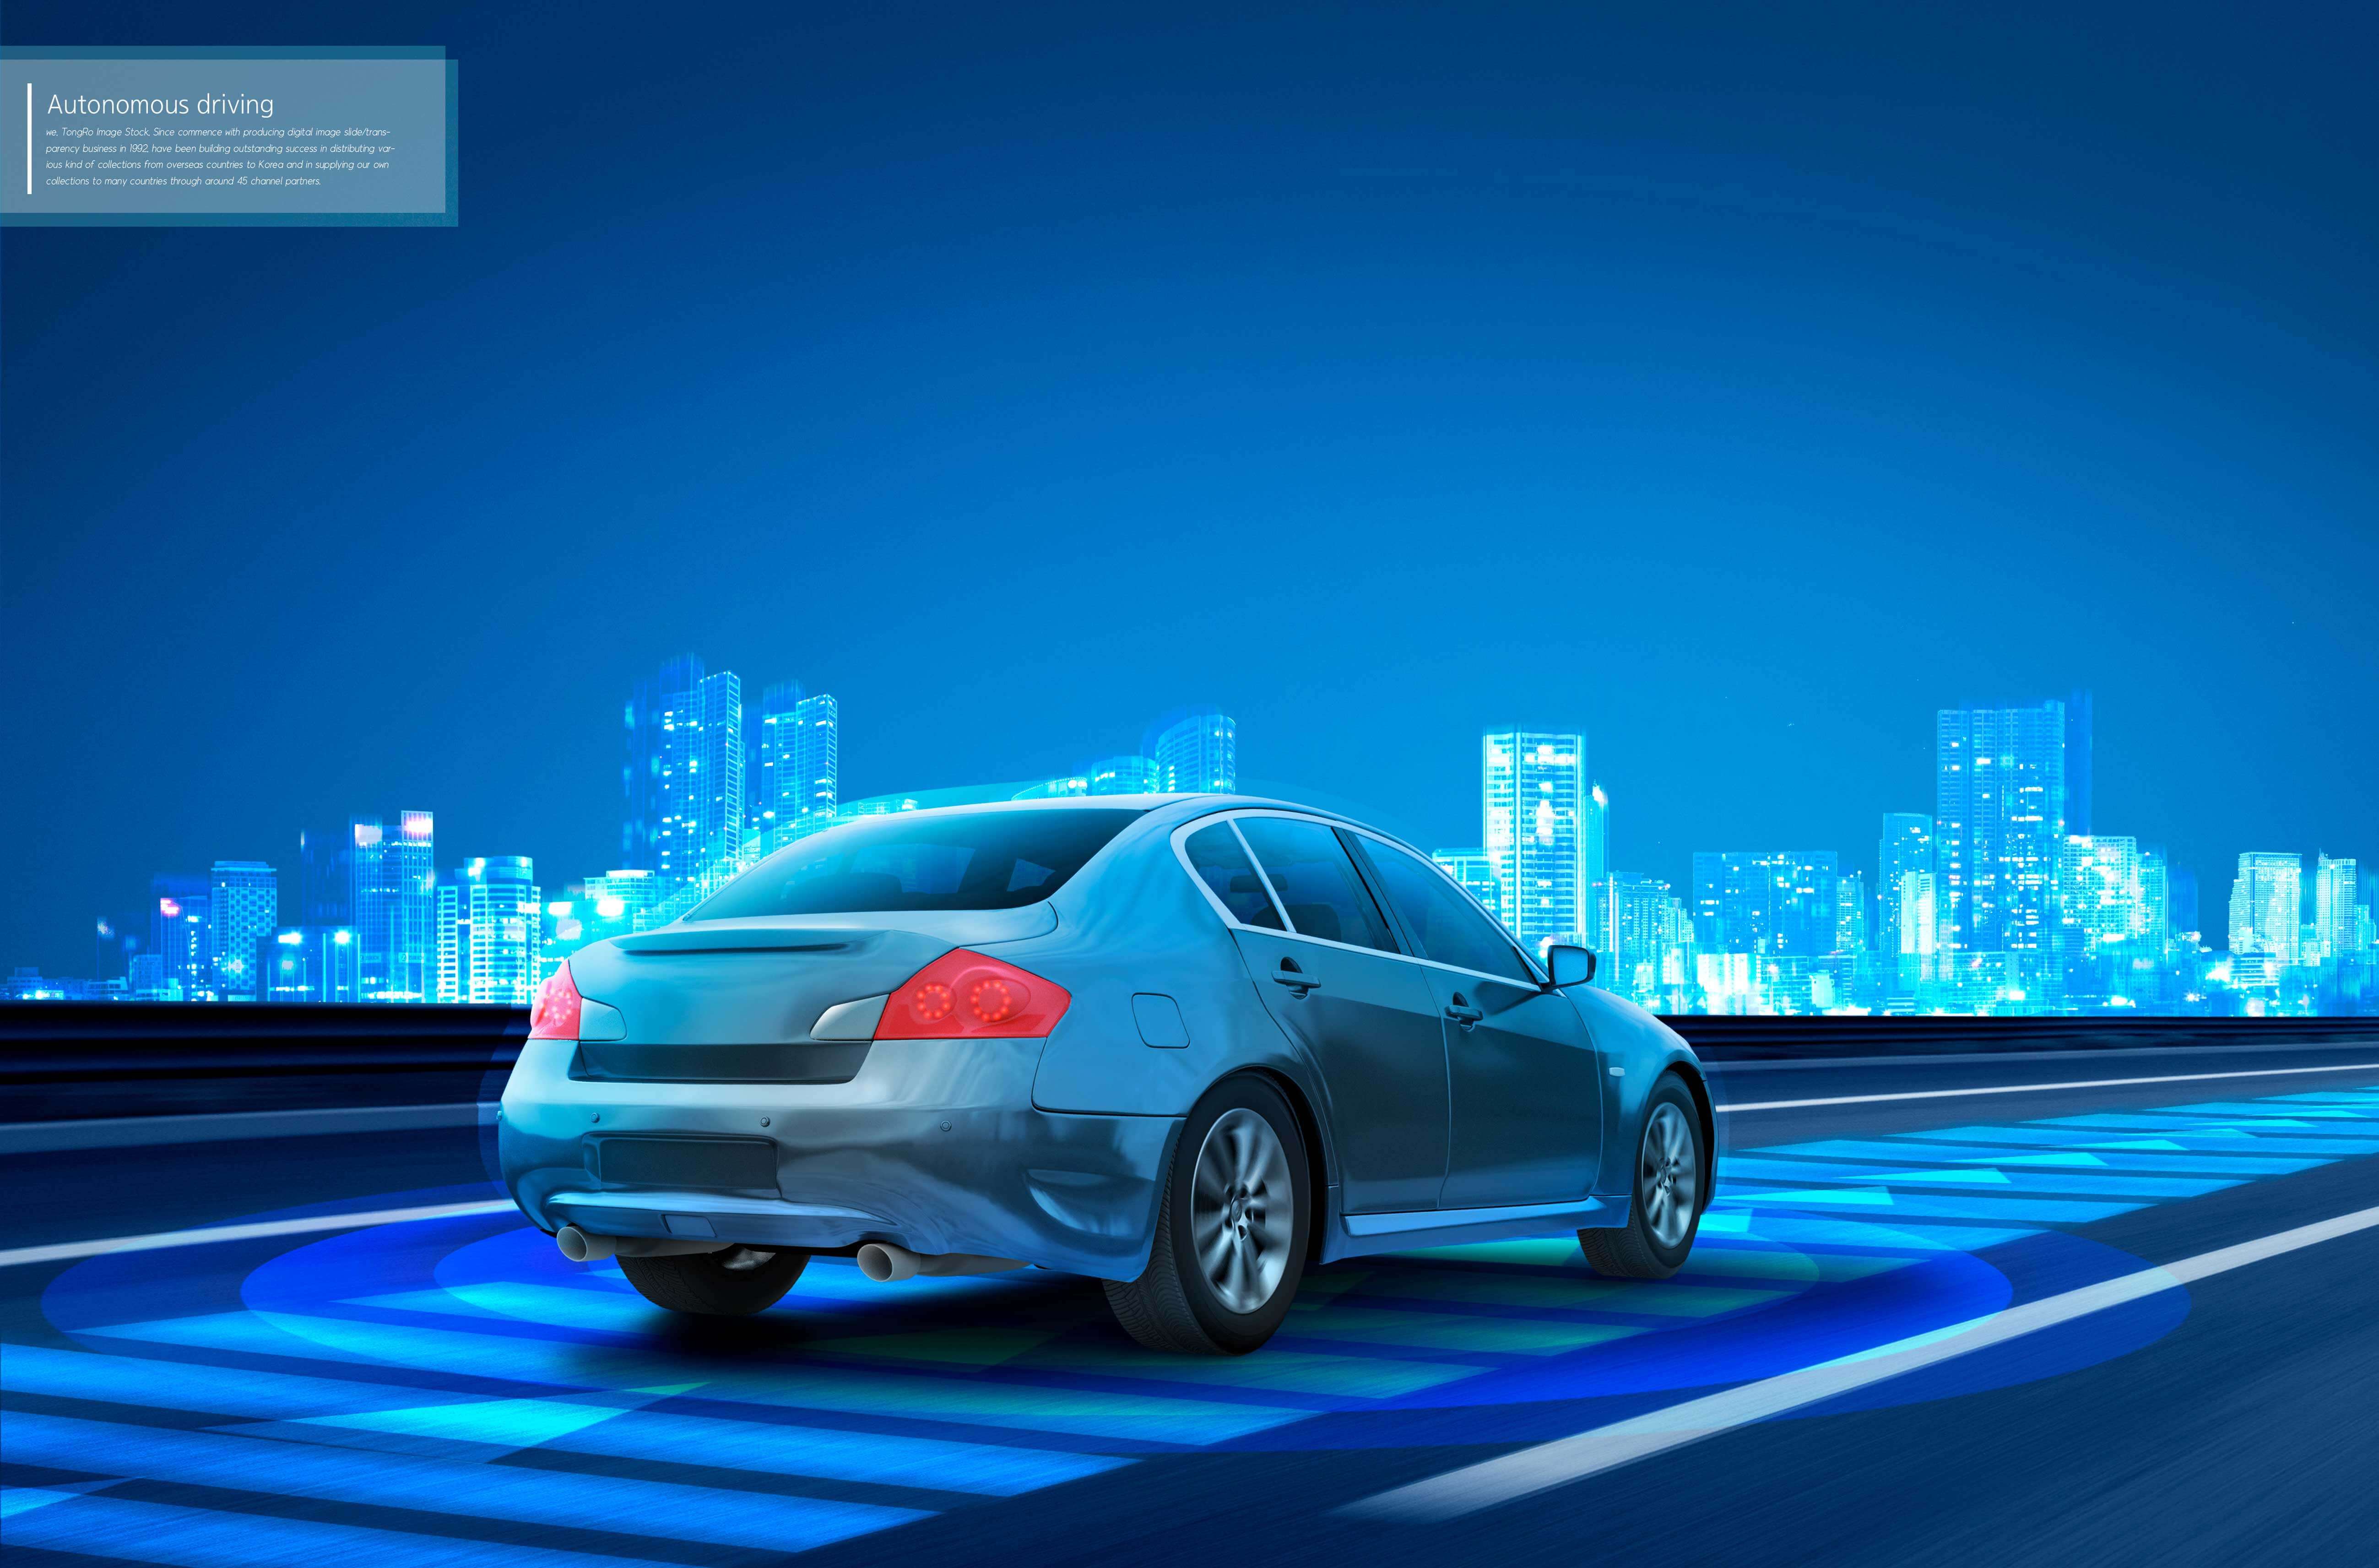 自动驾驶系统广告高科技海报设计素材 (psd)插图